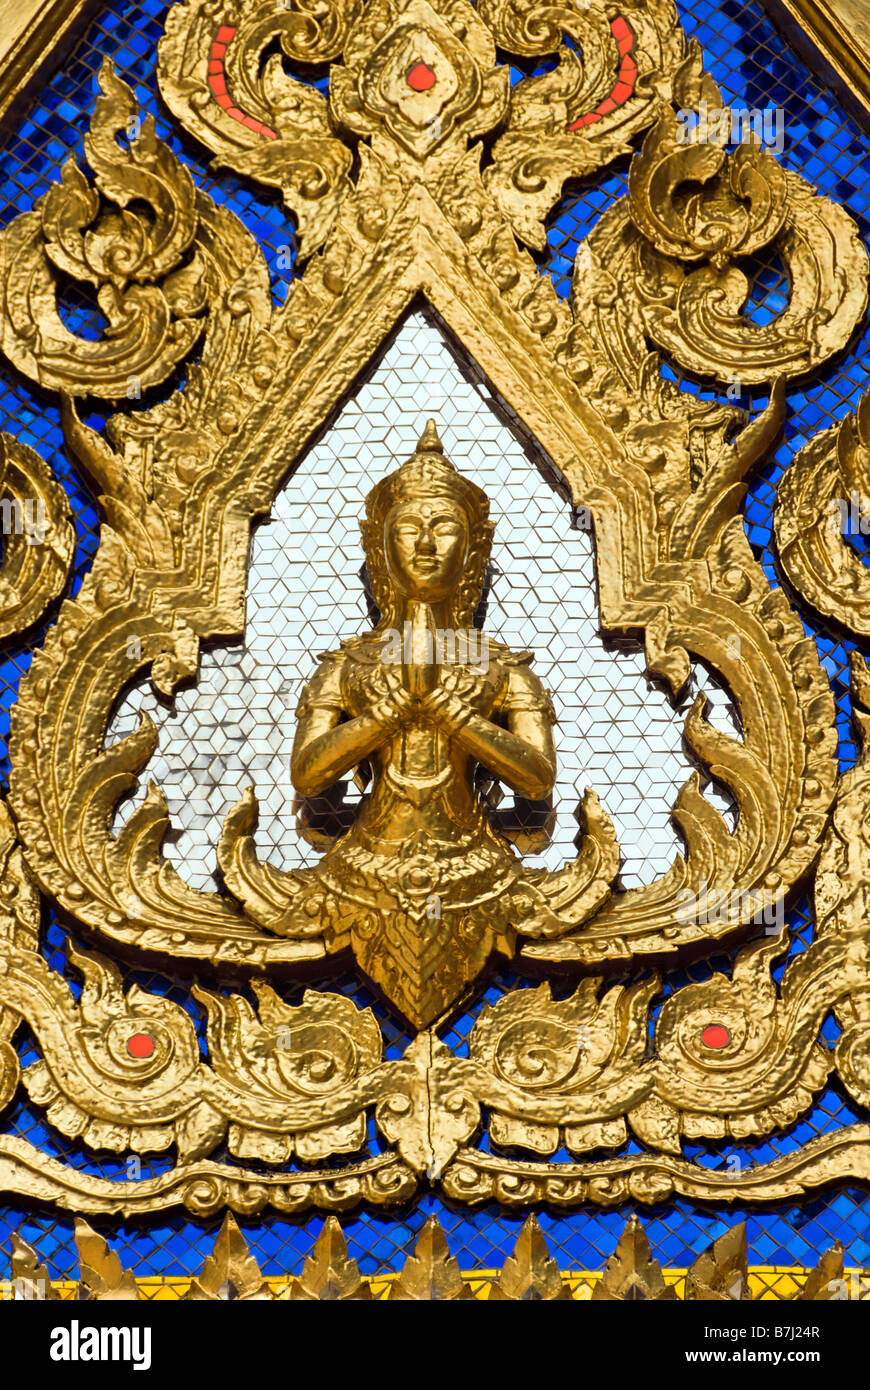 Gespiegelte Detail mit Buddha im Giebel des Tempels - Wat Phra Kaew und dem Grand Palace in Bangkok Zentralthailand Stockfoto